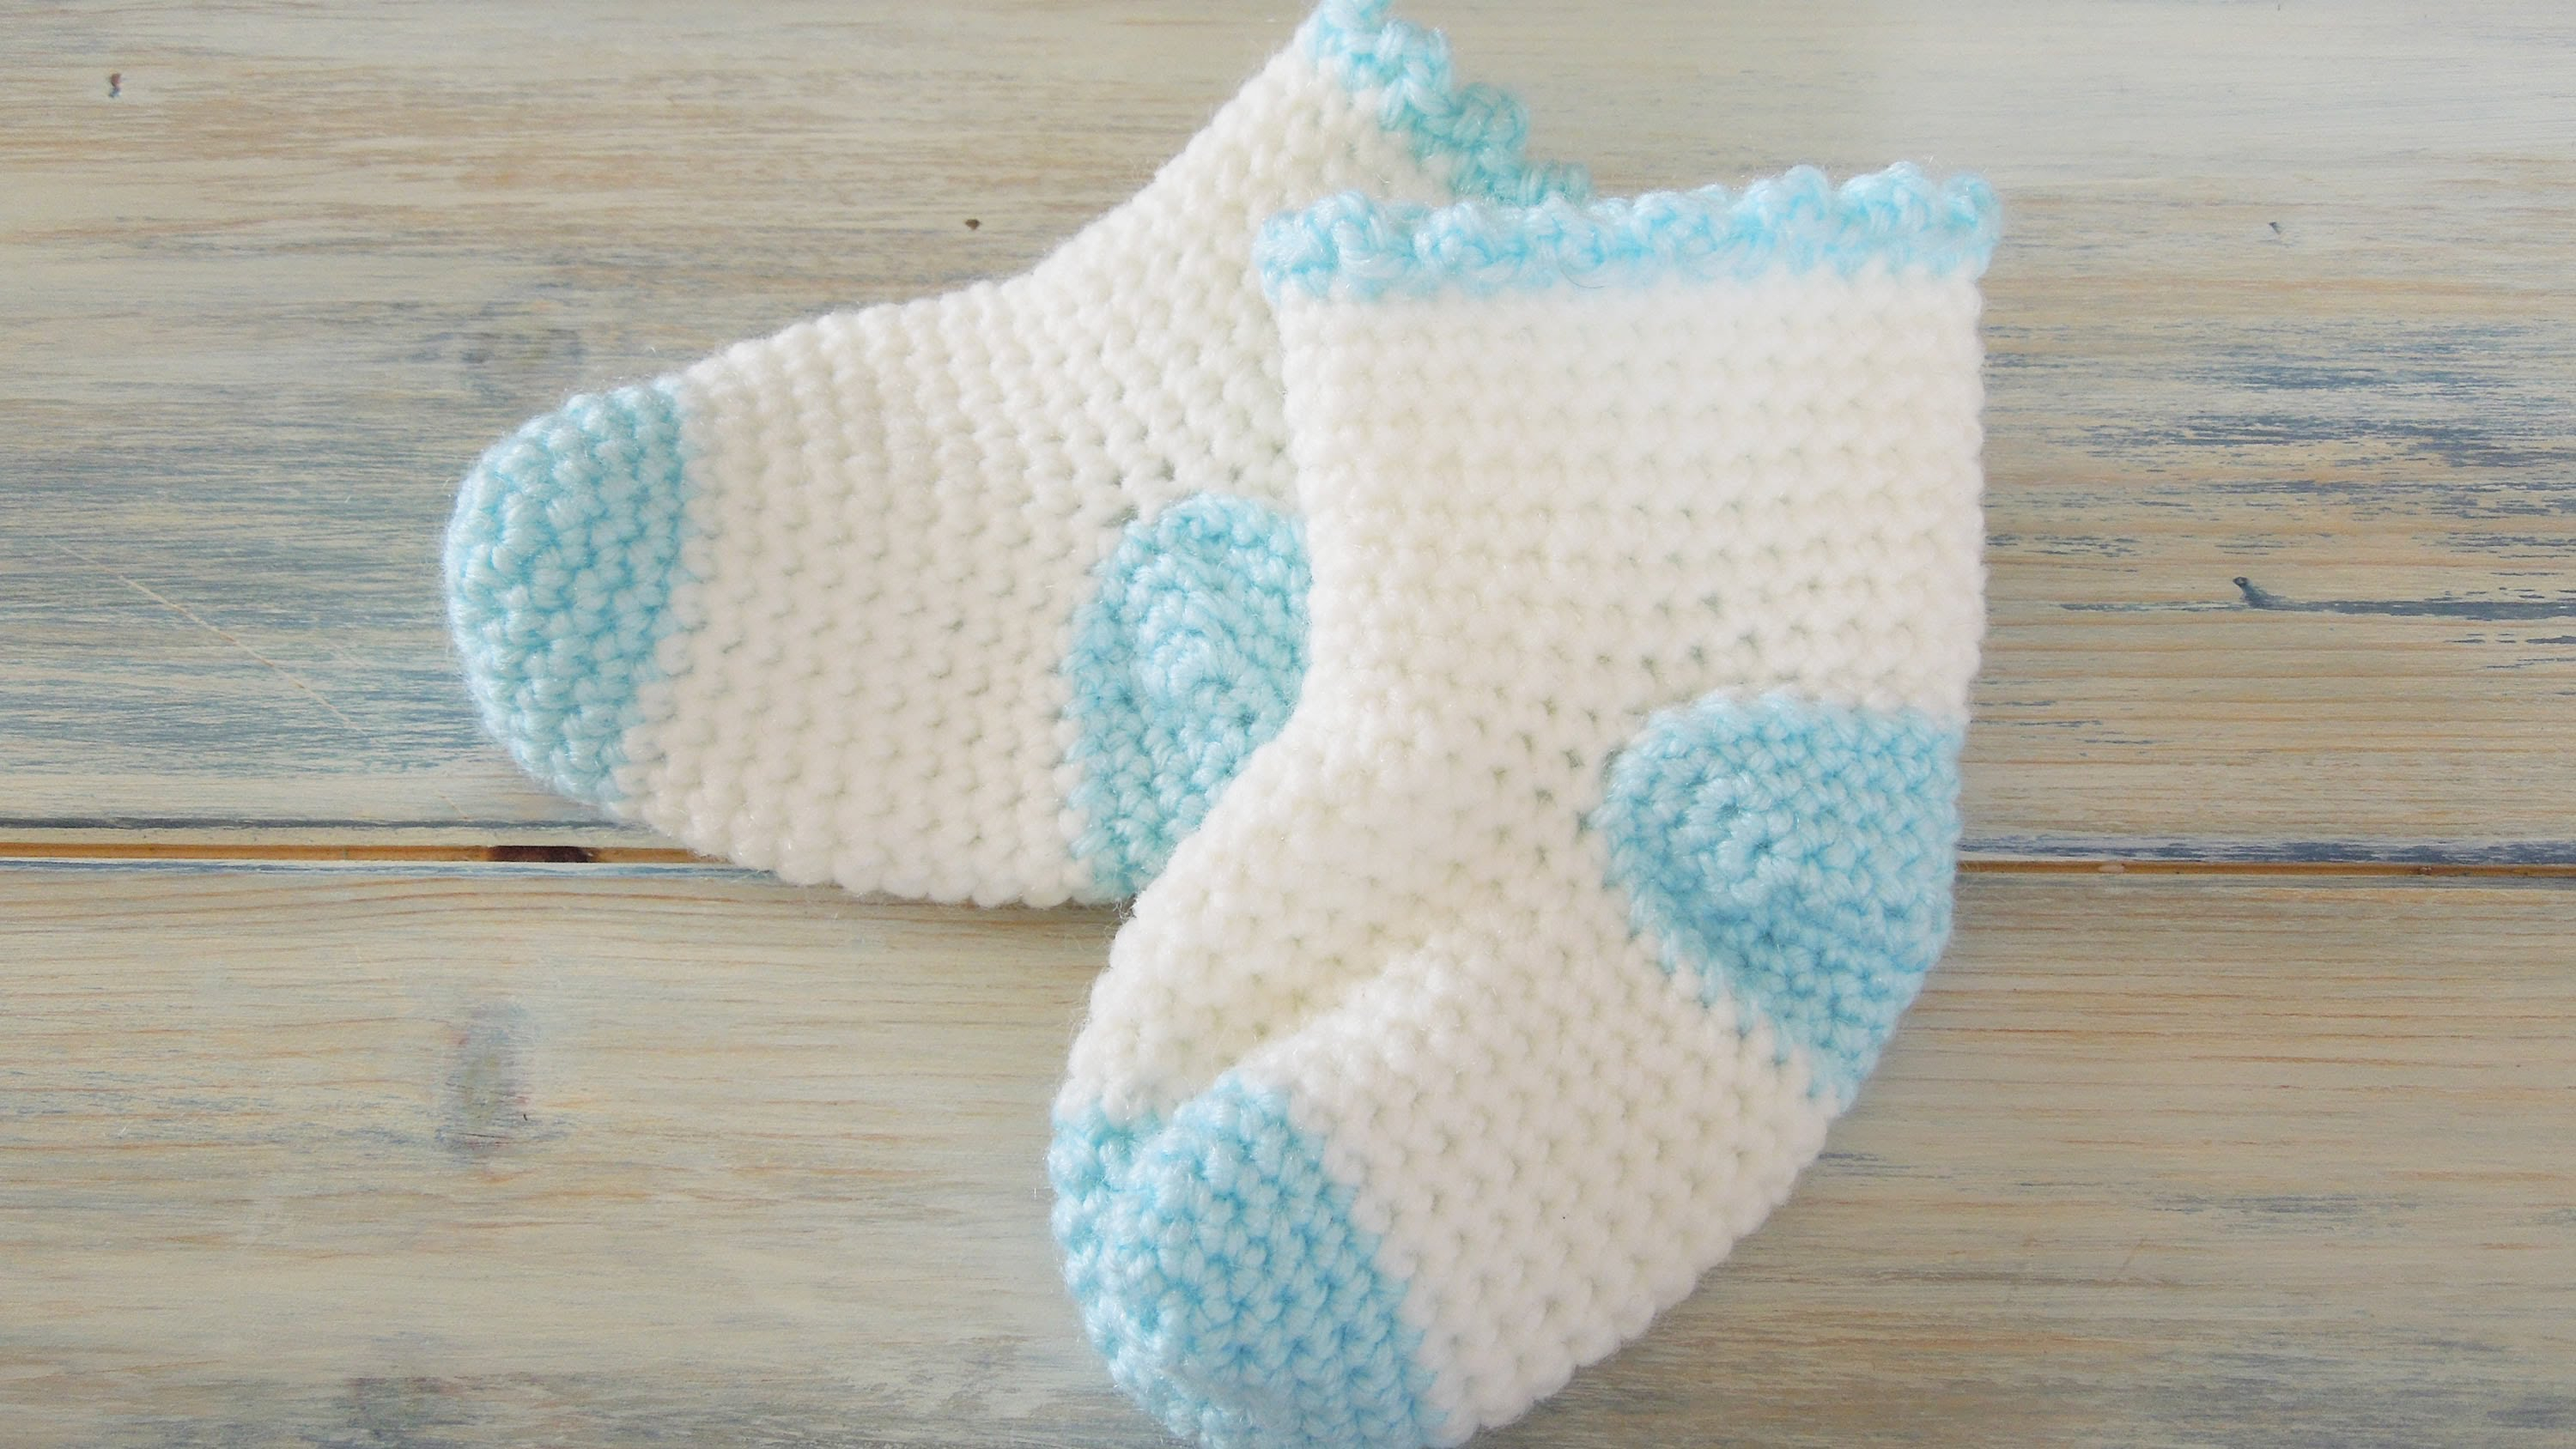 Baby Bootie Crochet Pattern How To Crochet Ba Socks Video Free Pattern